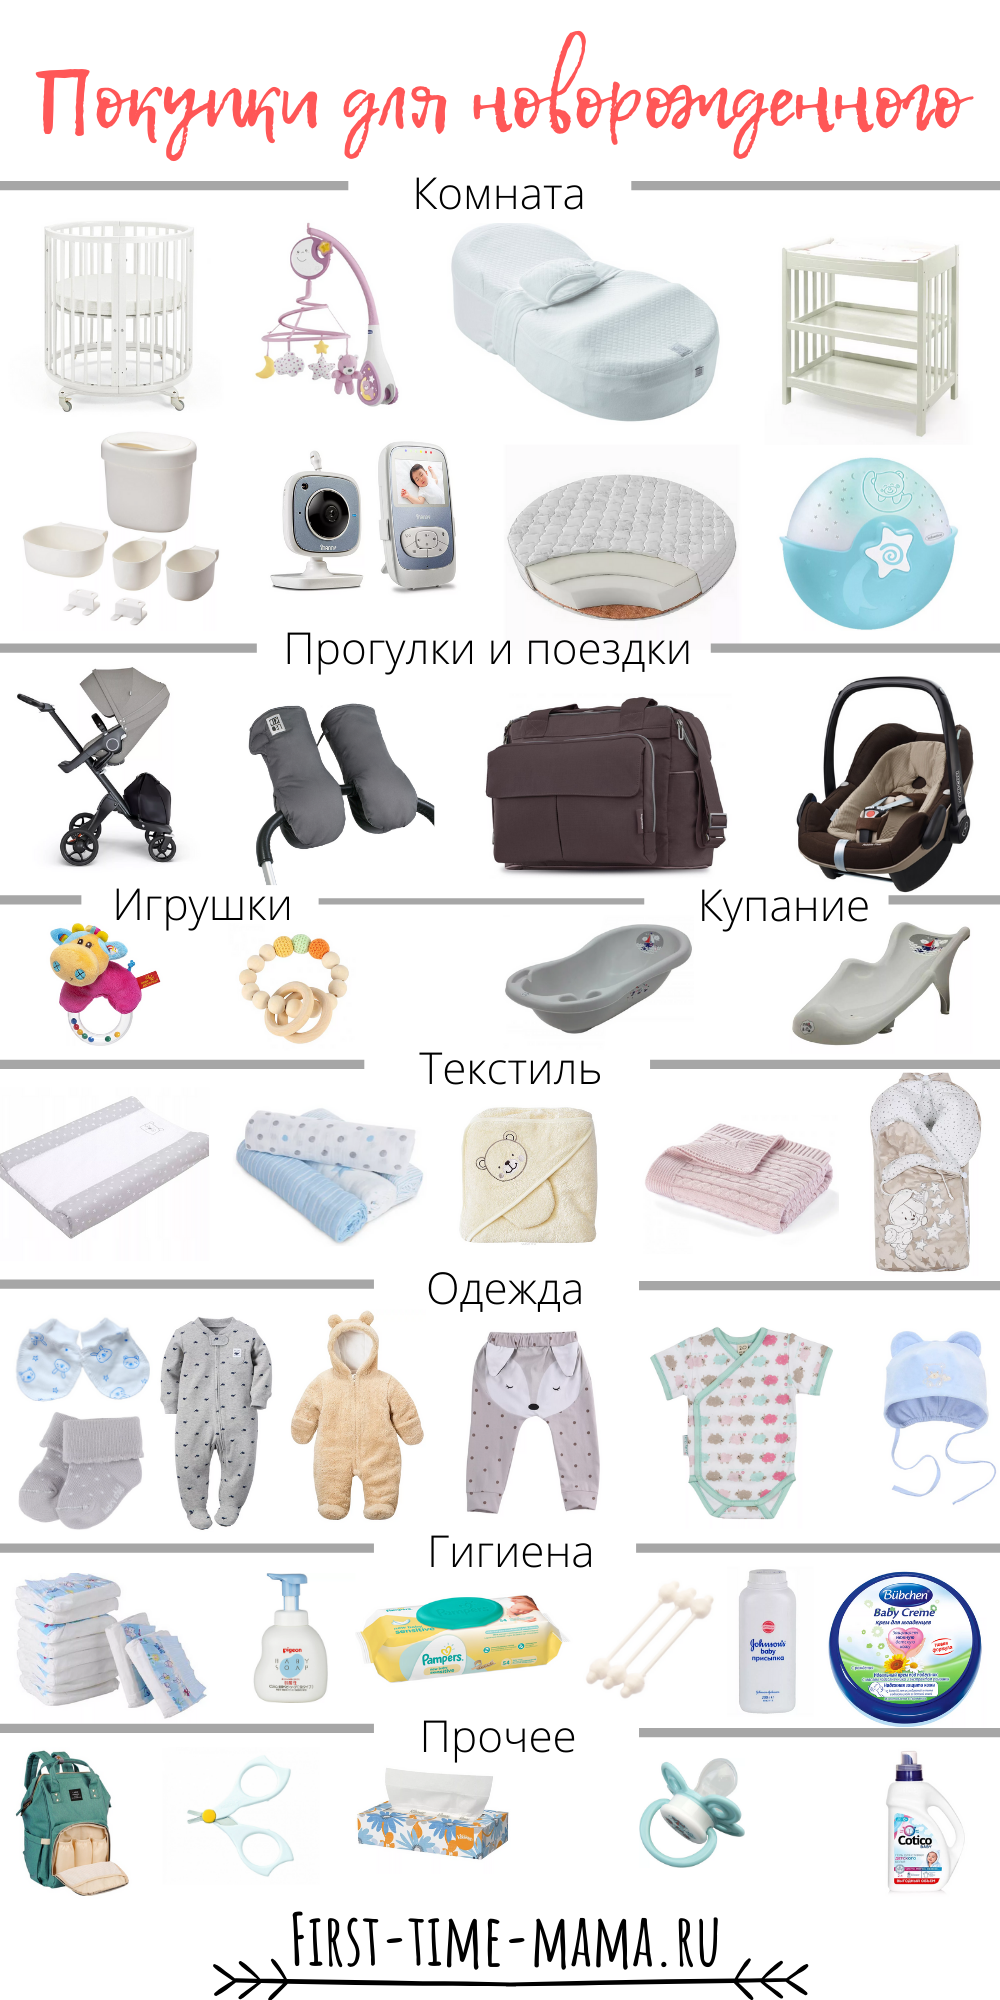 Первая покупка для новорожденных. Вещи первой необходимости для новорожденного после роддома. Одежда для новорожденного список необходимого. Список вещей для новорожденного. Список однждыдля новорожденного.